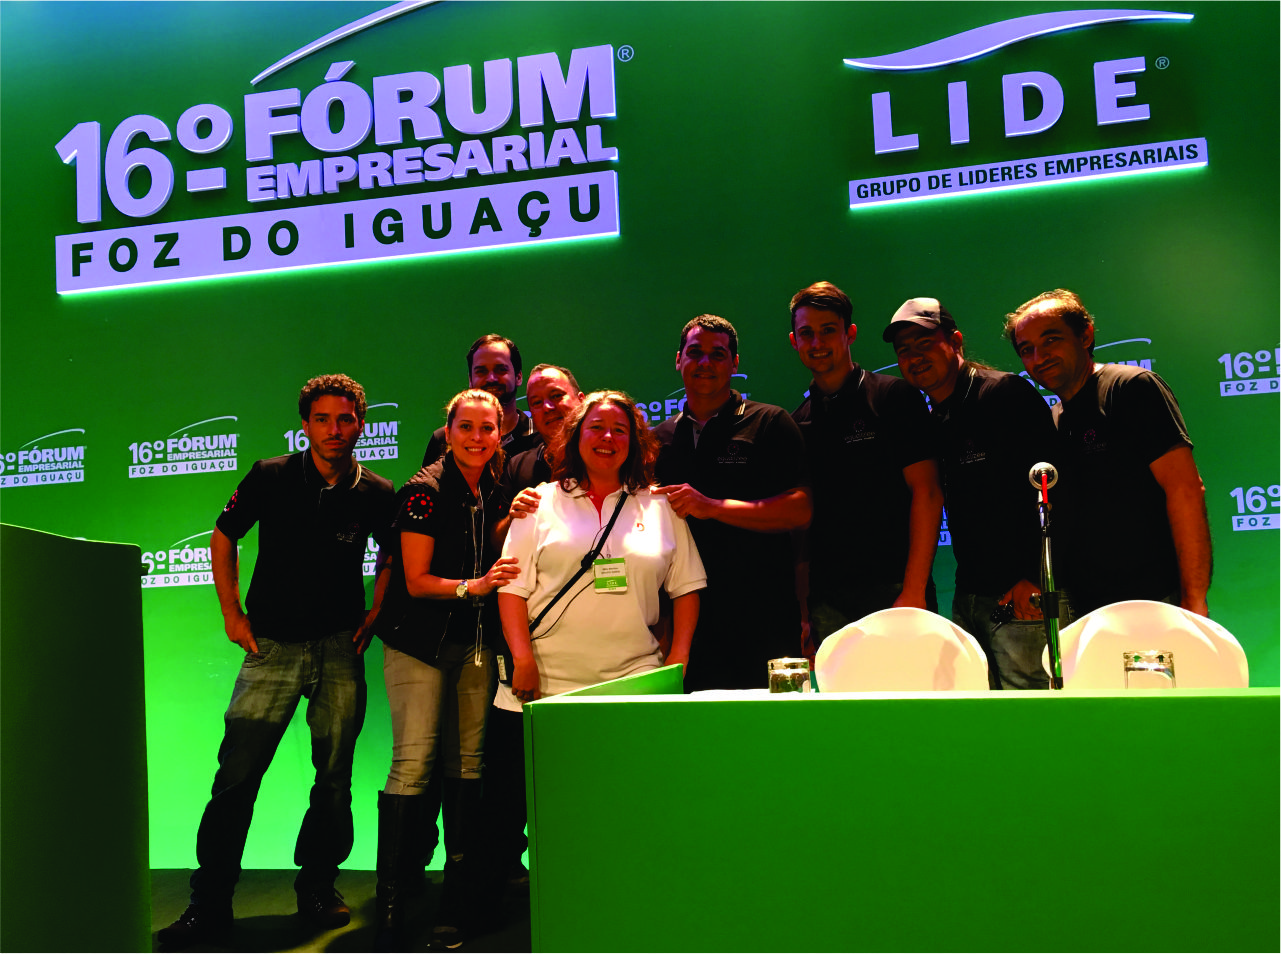 16º Fórum Empresarial - LIDE 2017 0